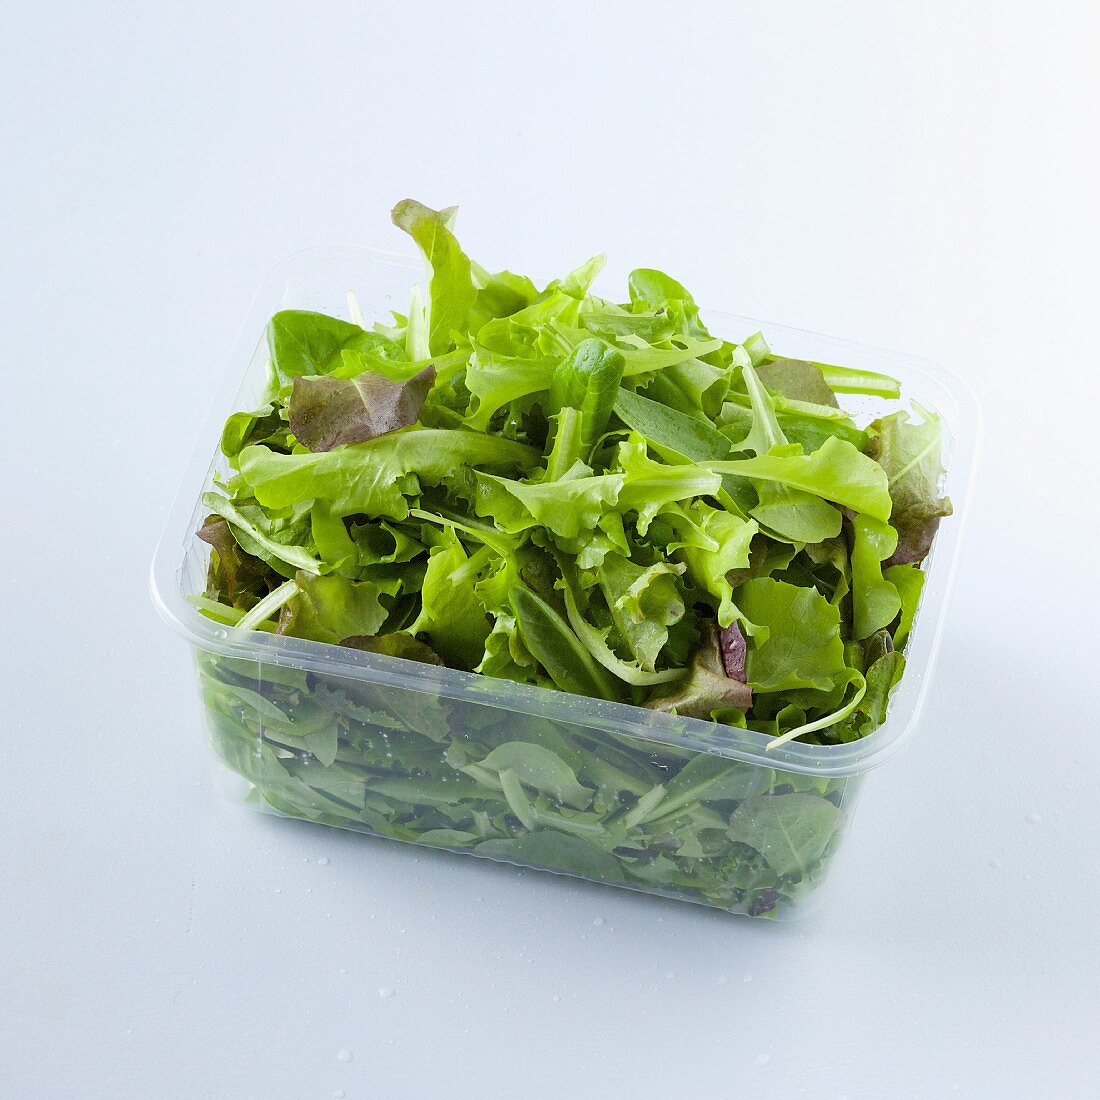 Blattsalat im Plastikschälchen